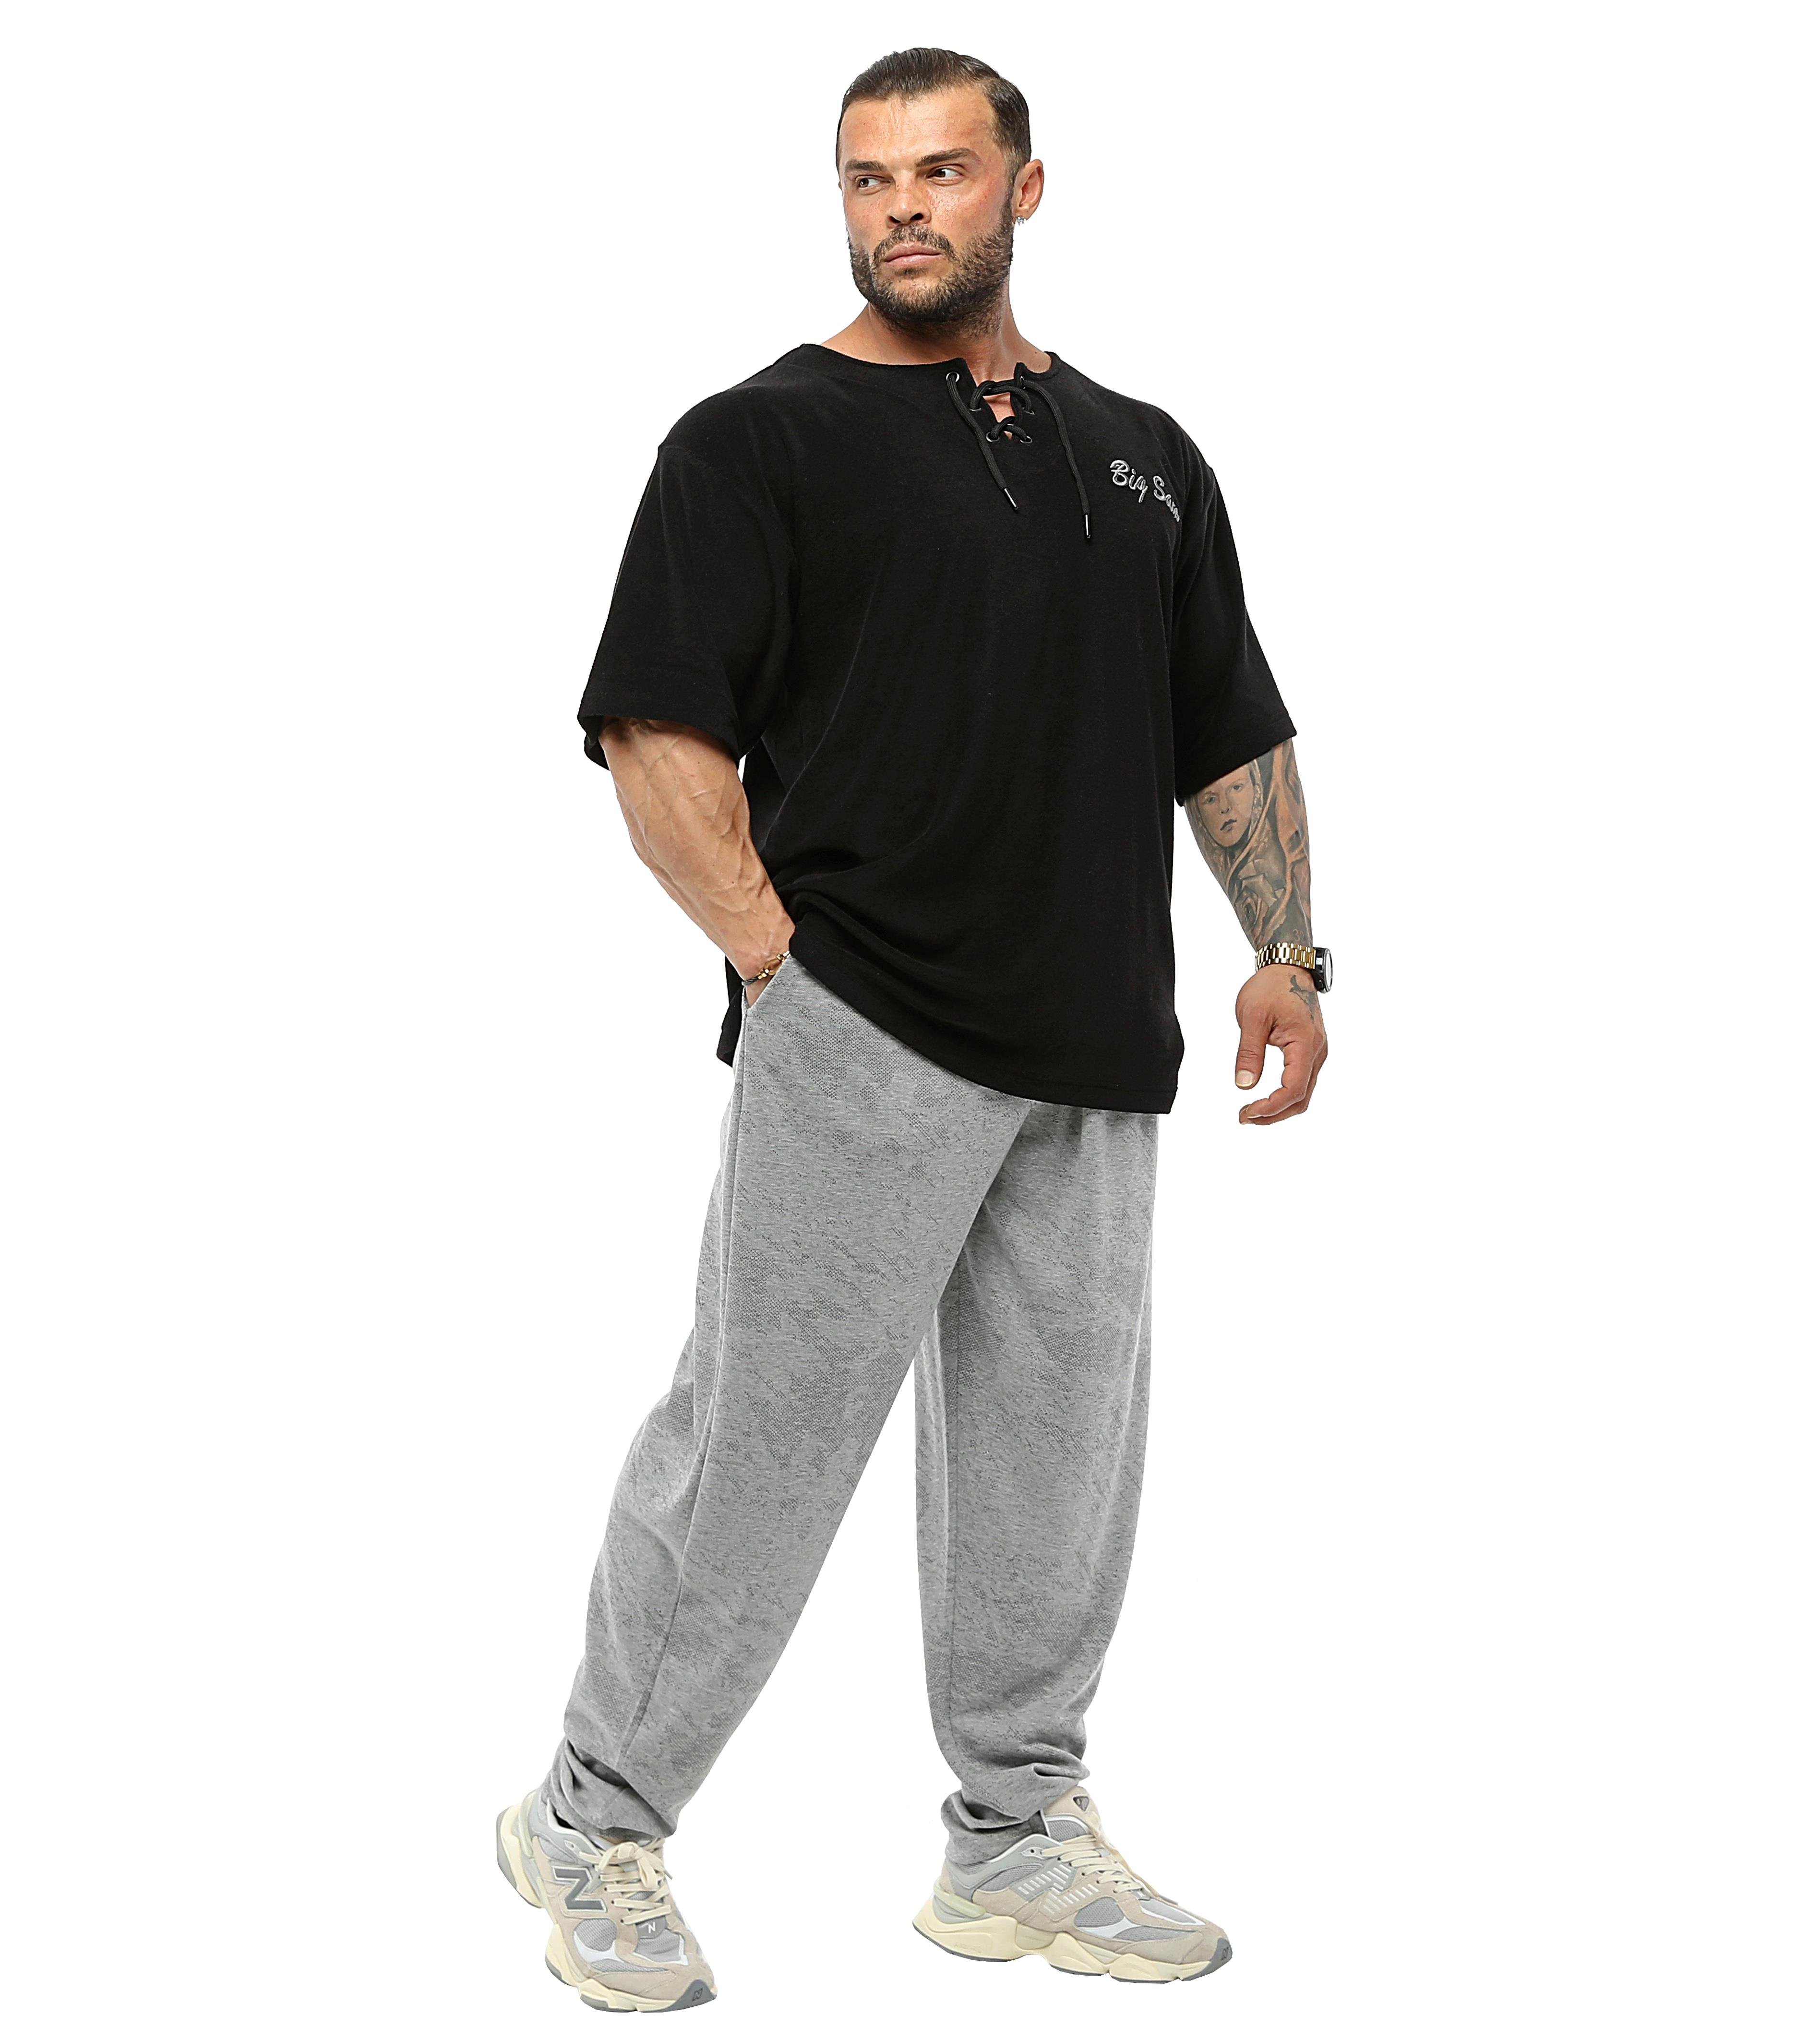 Men's Loose Fit Sweatpants with Pockets, Baggy Pants BGSM PNT1378